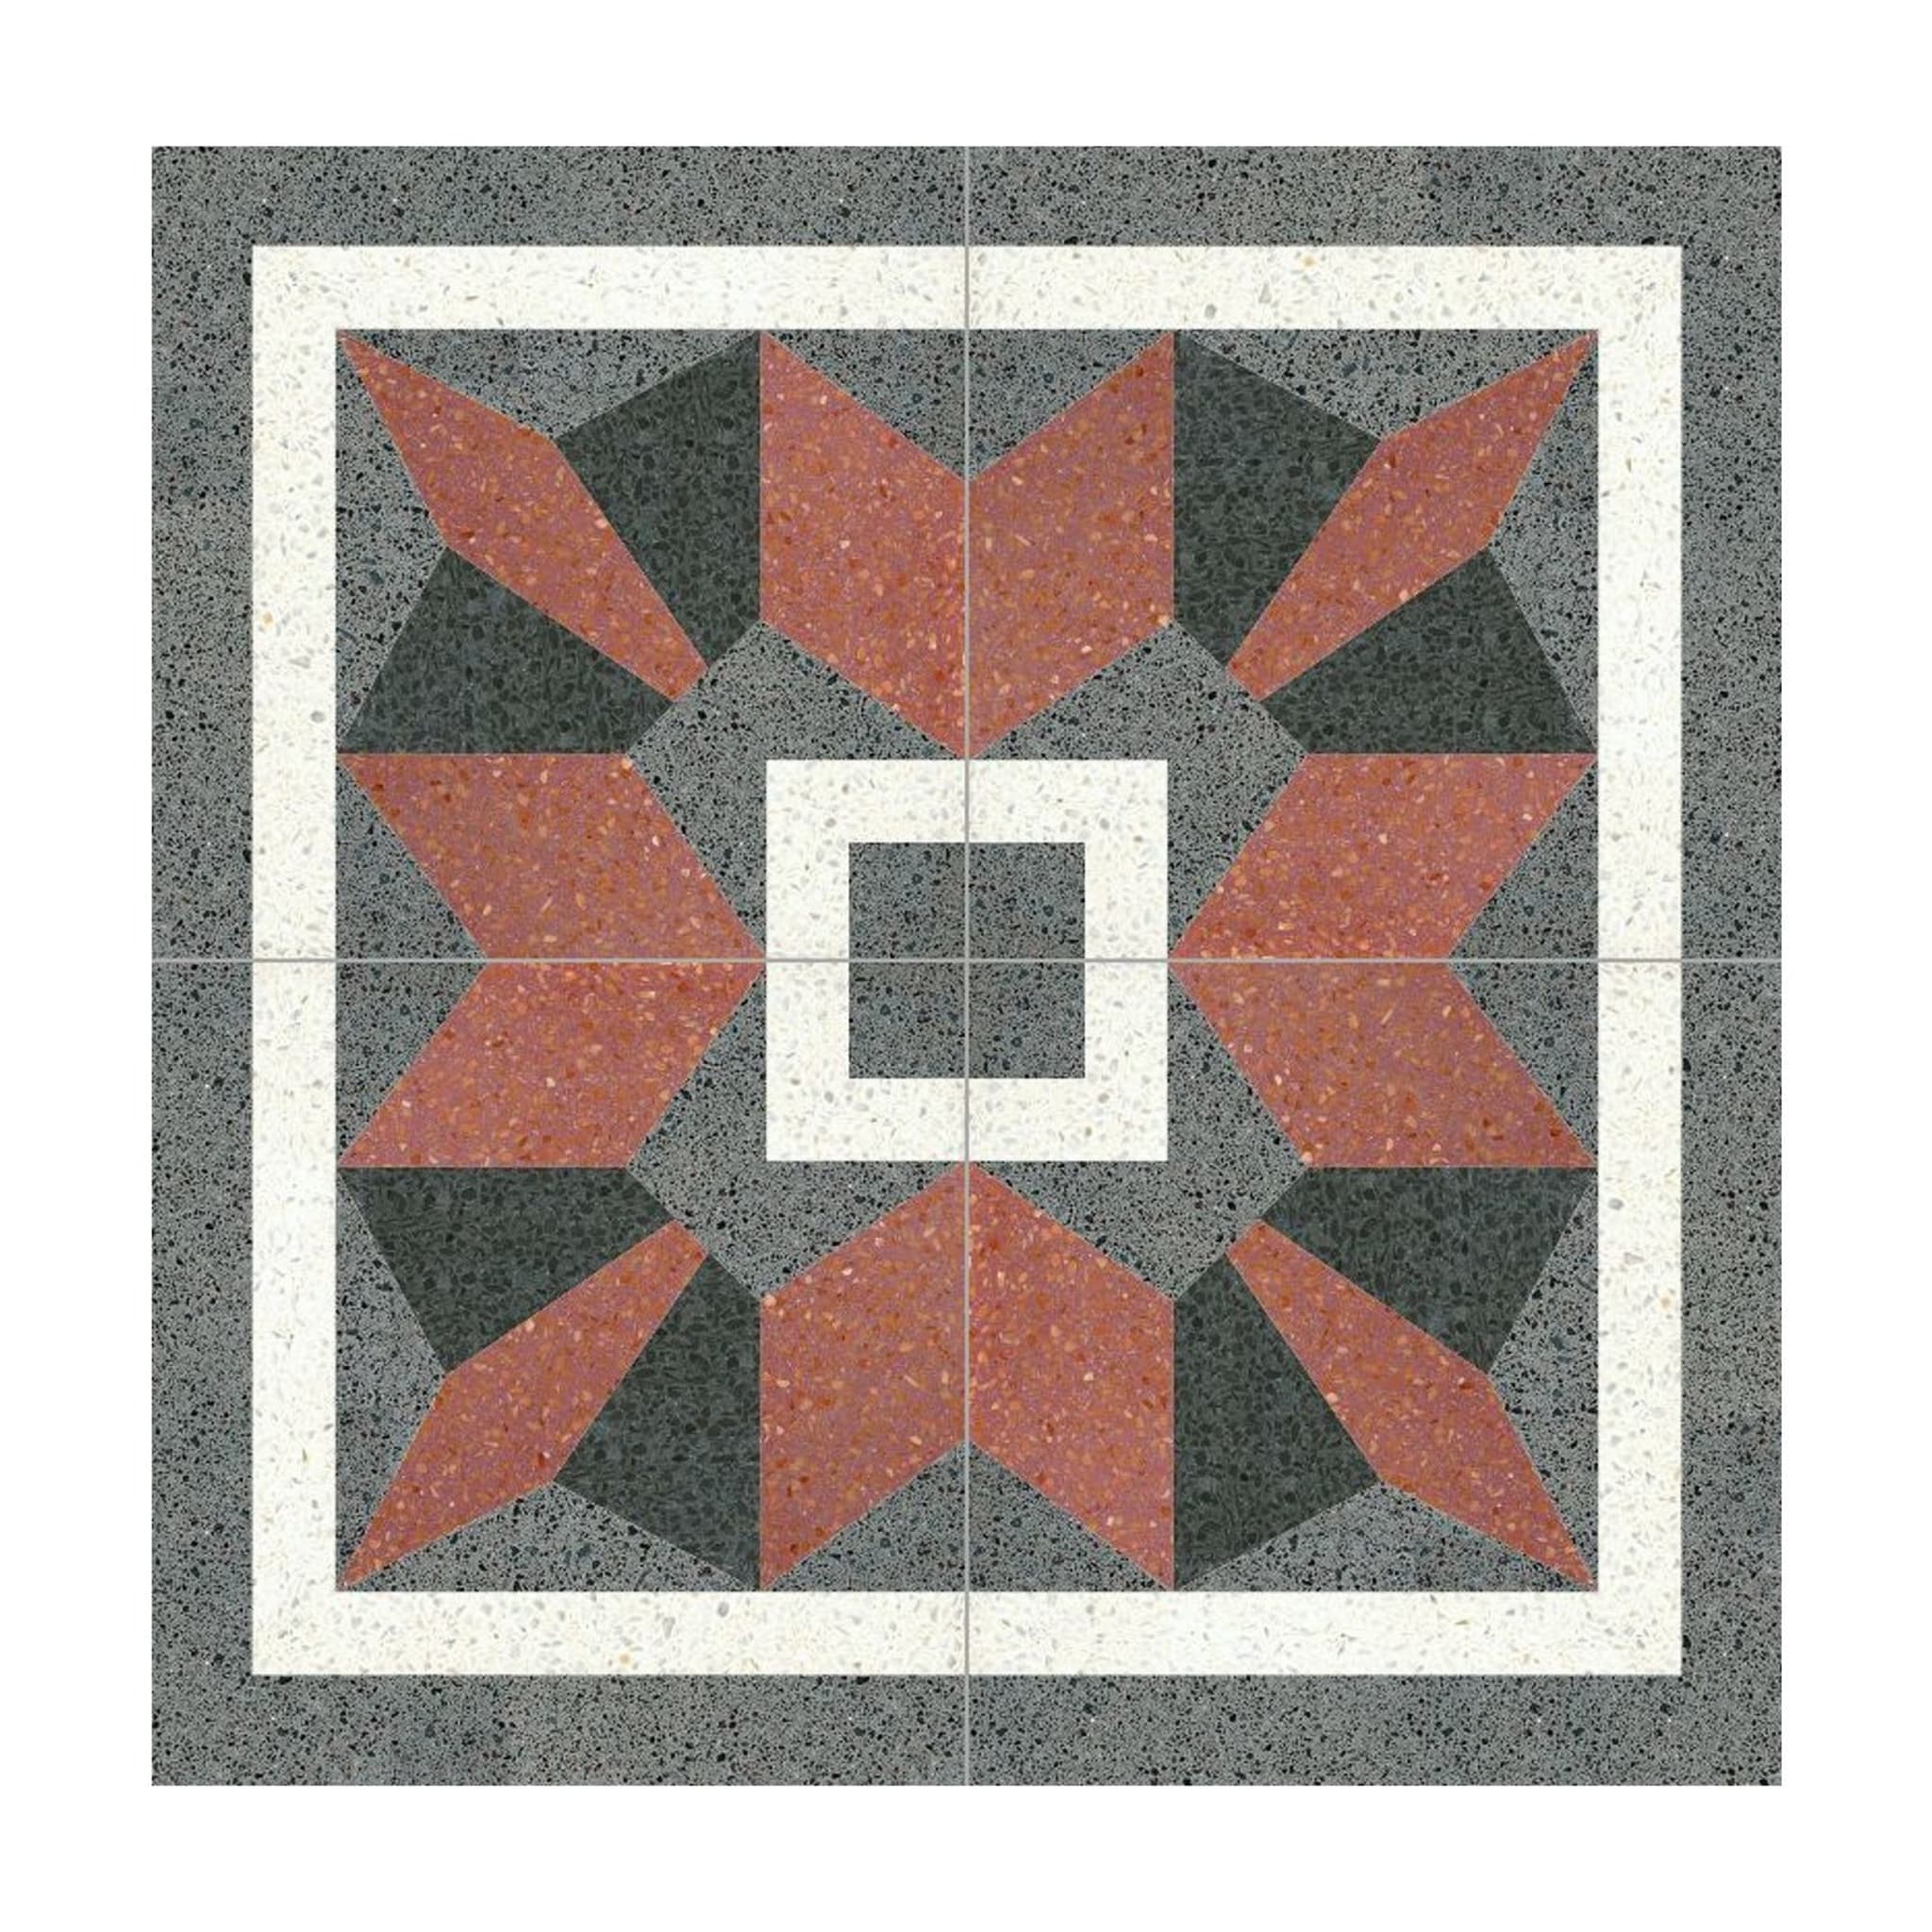 Trapezo Set of 25 Terrazzo Tiles - Main view